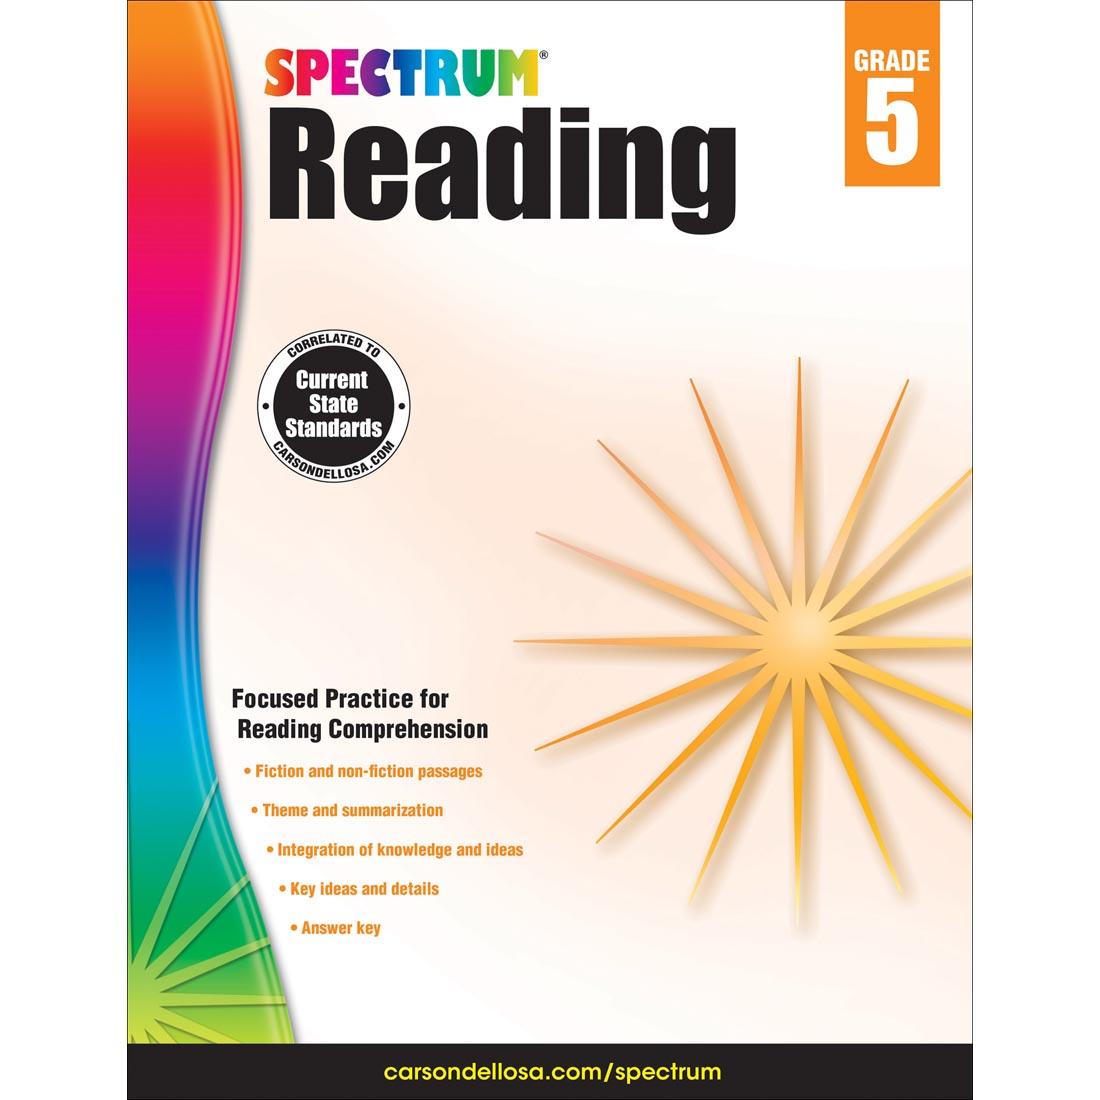 Spectrum Reading by Carson Dellosa Grade 5